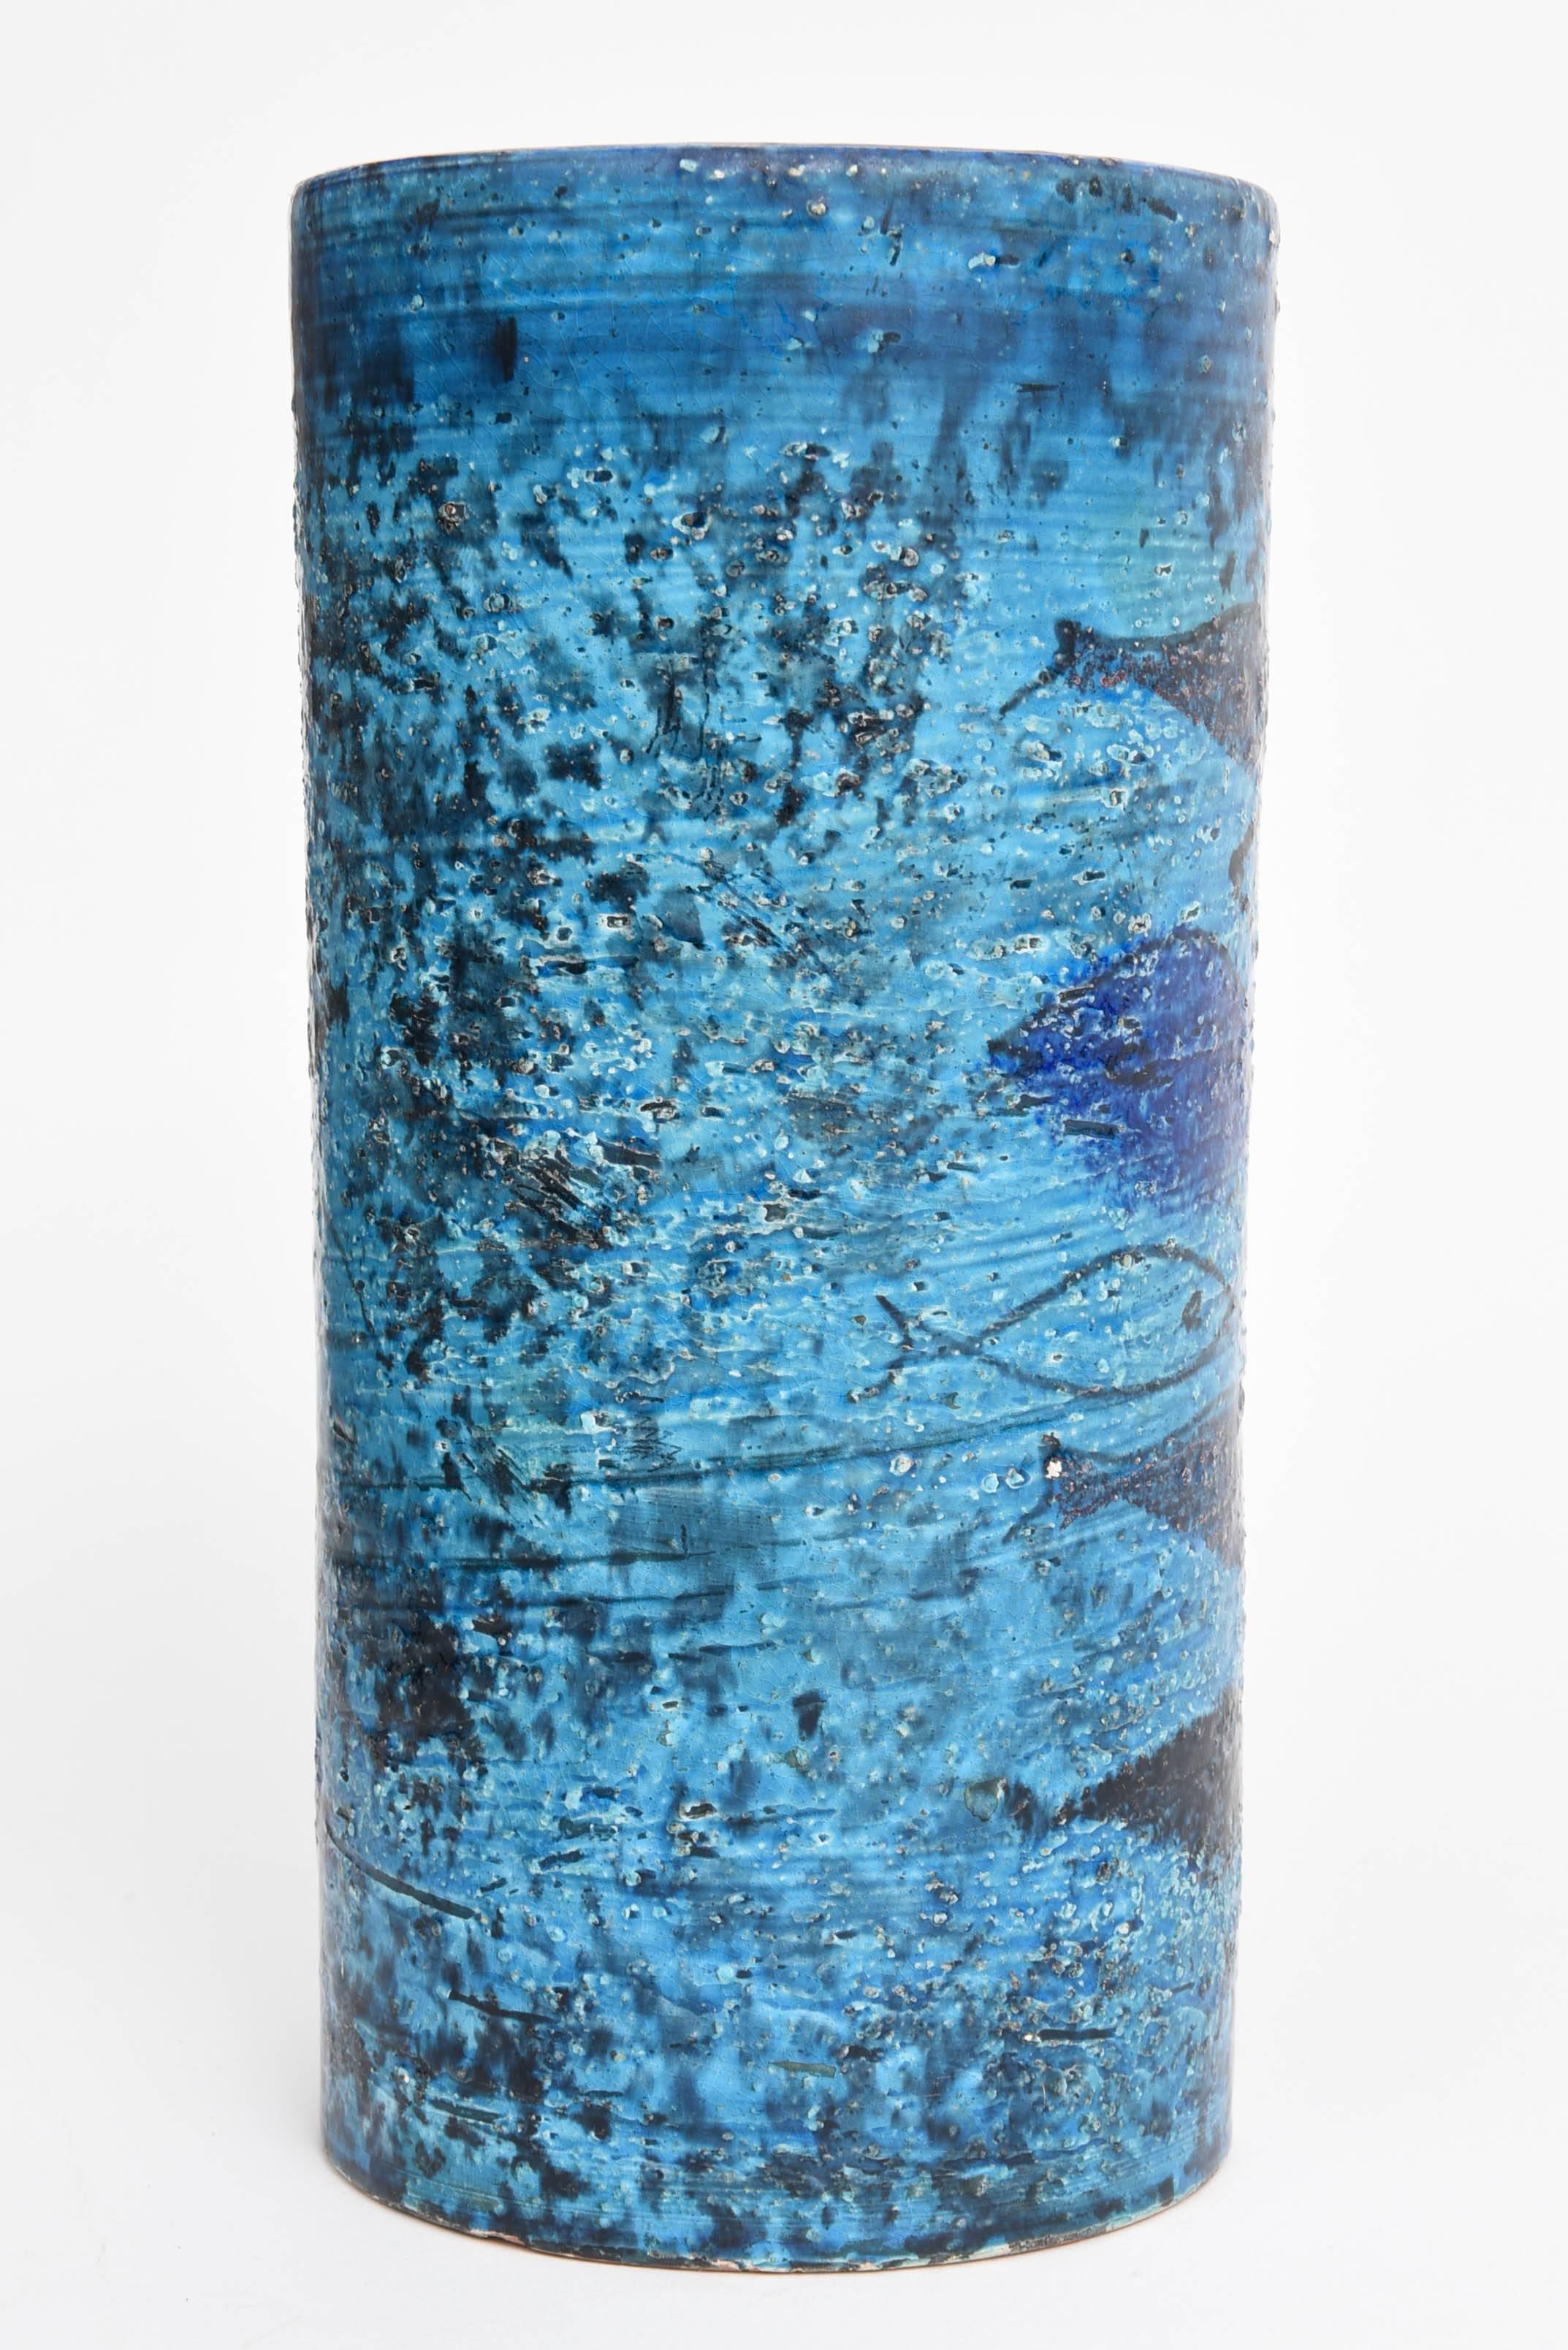 Bitossi Rimini Blue Fish Vase designed by Aldo Londi.

Made in Italy in the 1960s for Raymor